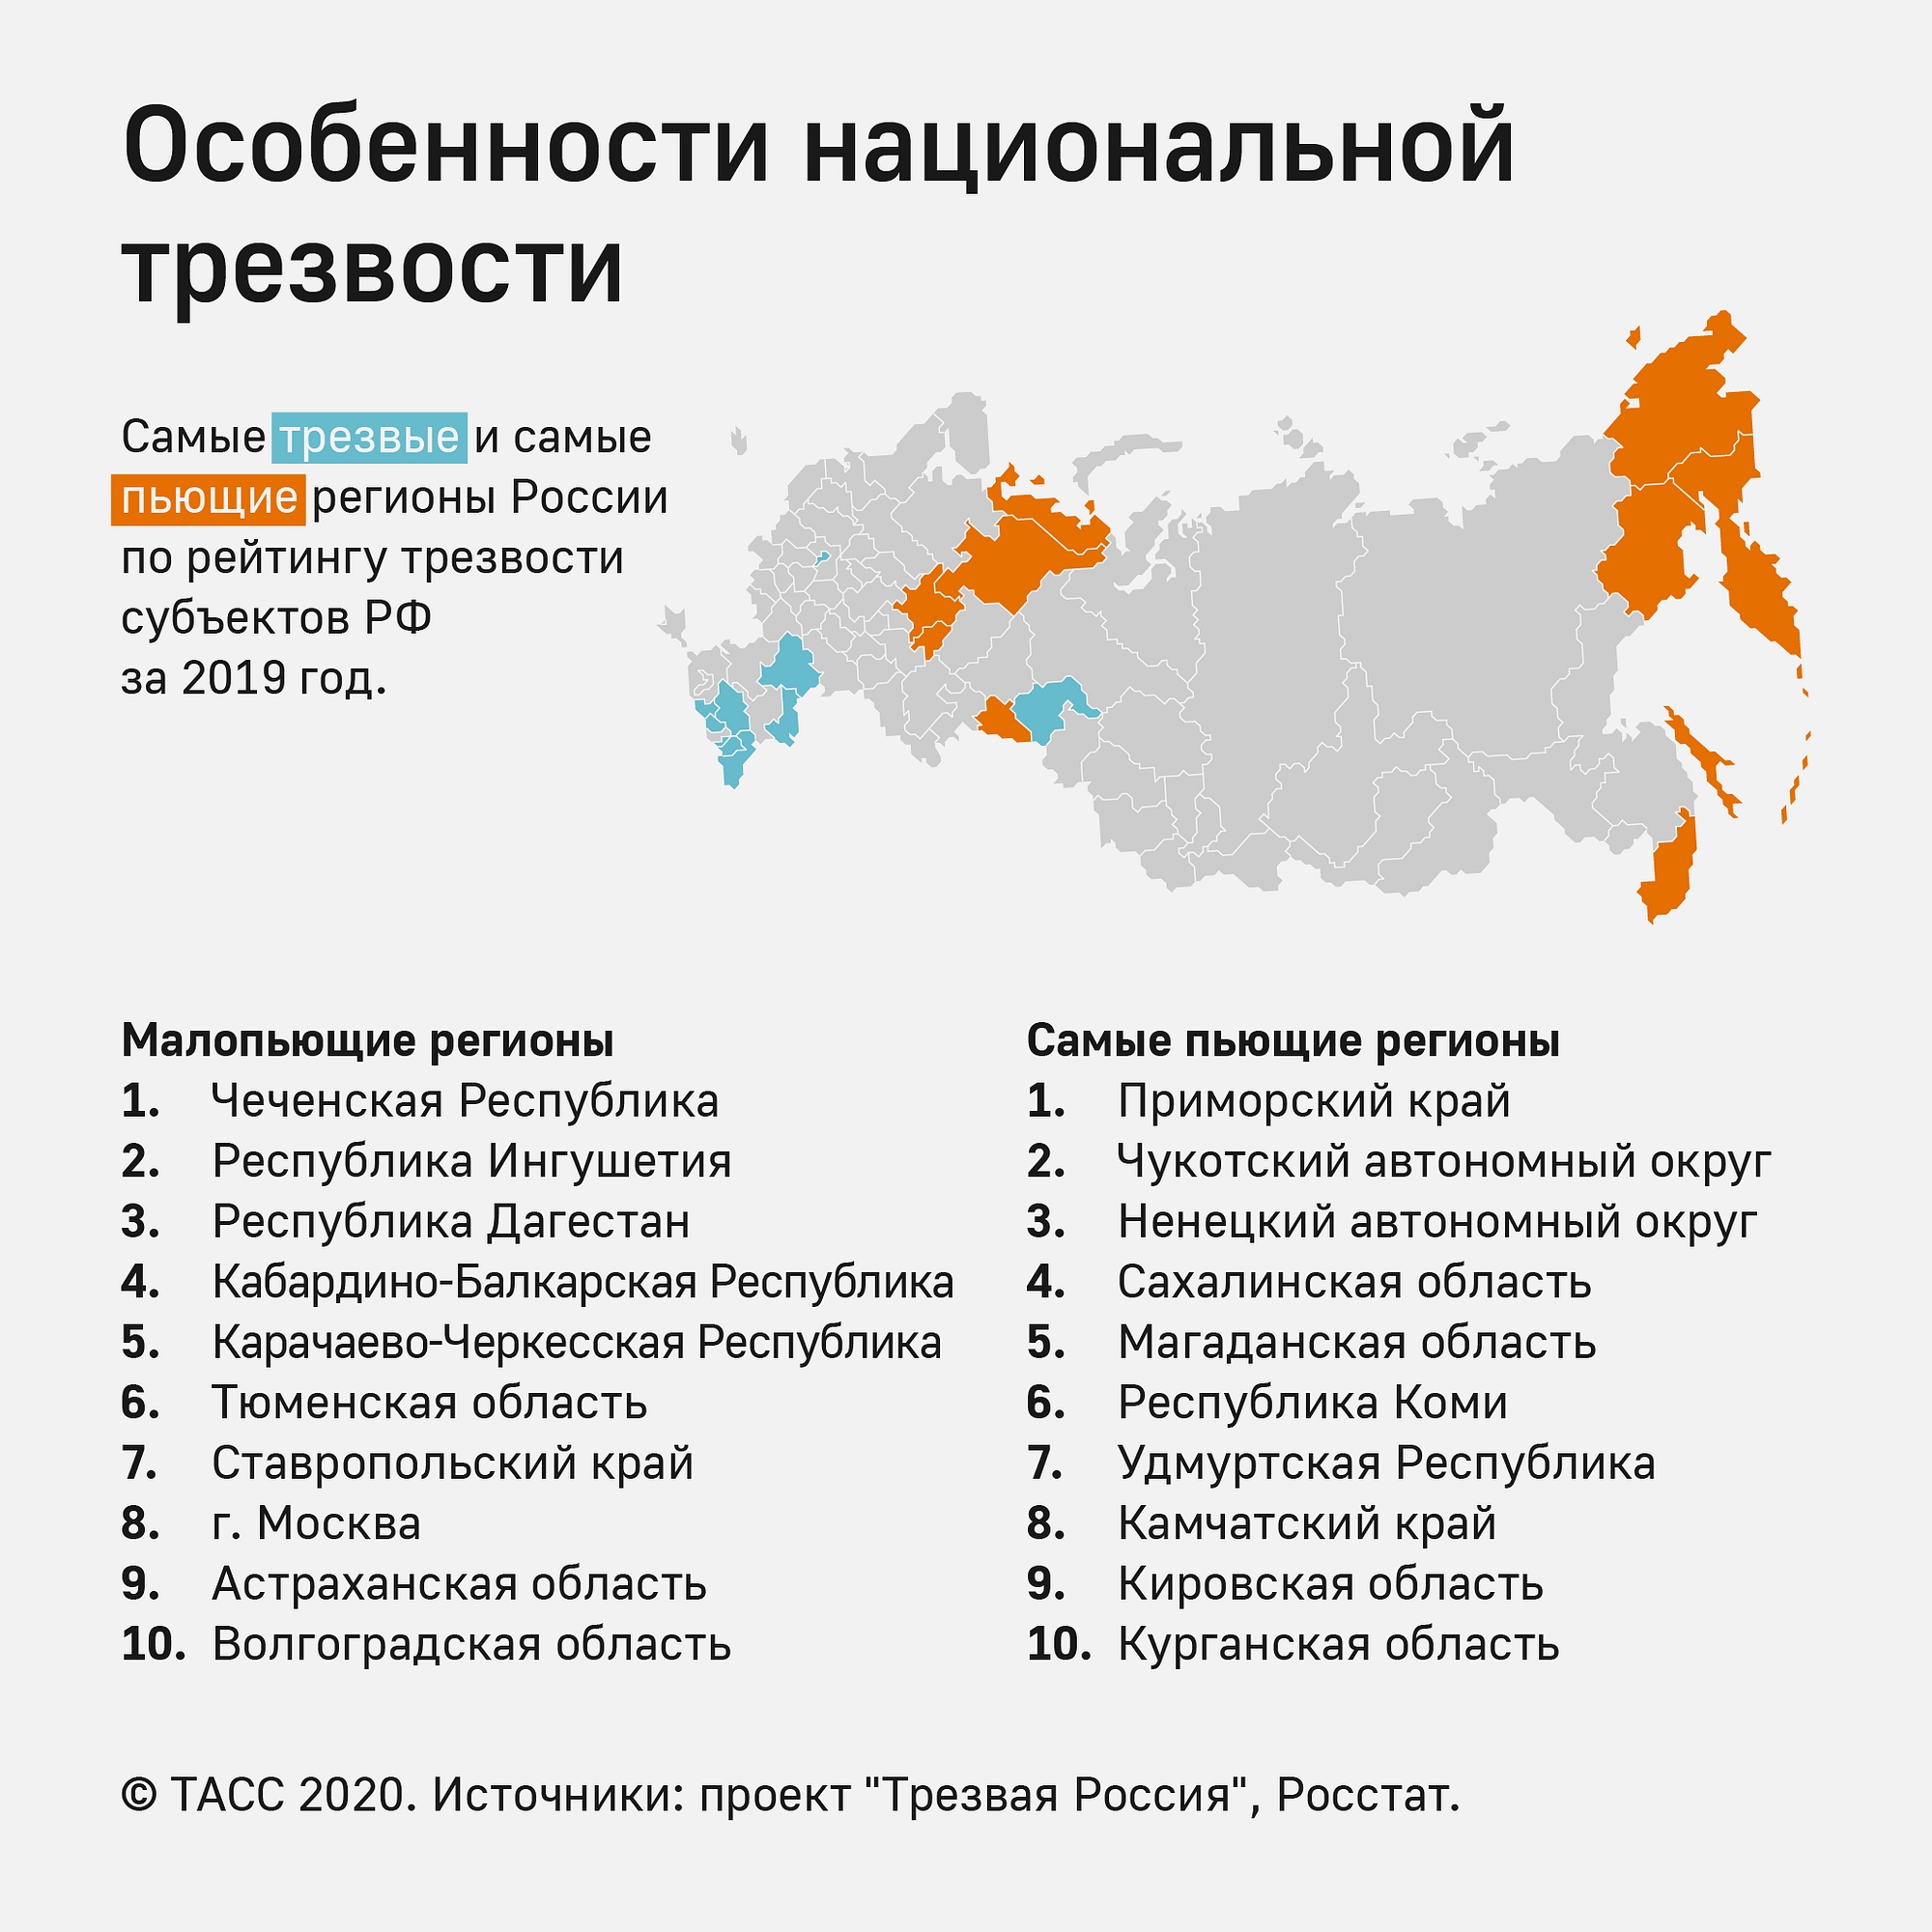 Алкогольные регионы. Самые пьющие области России. Самые пьющие регионы. Самые пьющие регионы РФ. Список самых пьющих регионов.